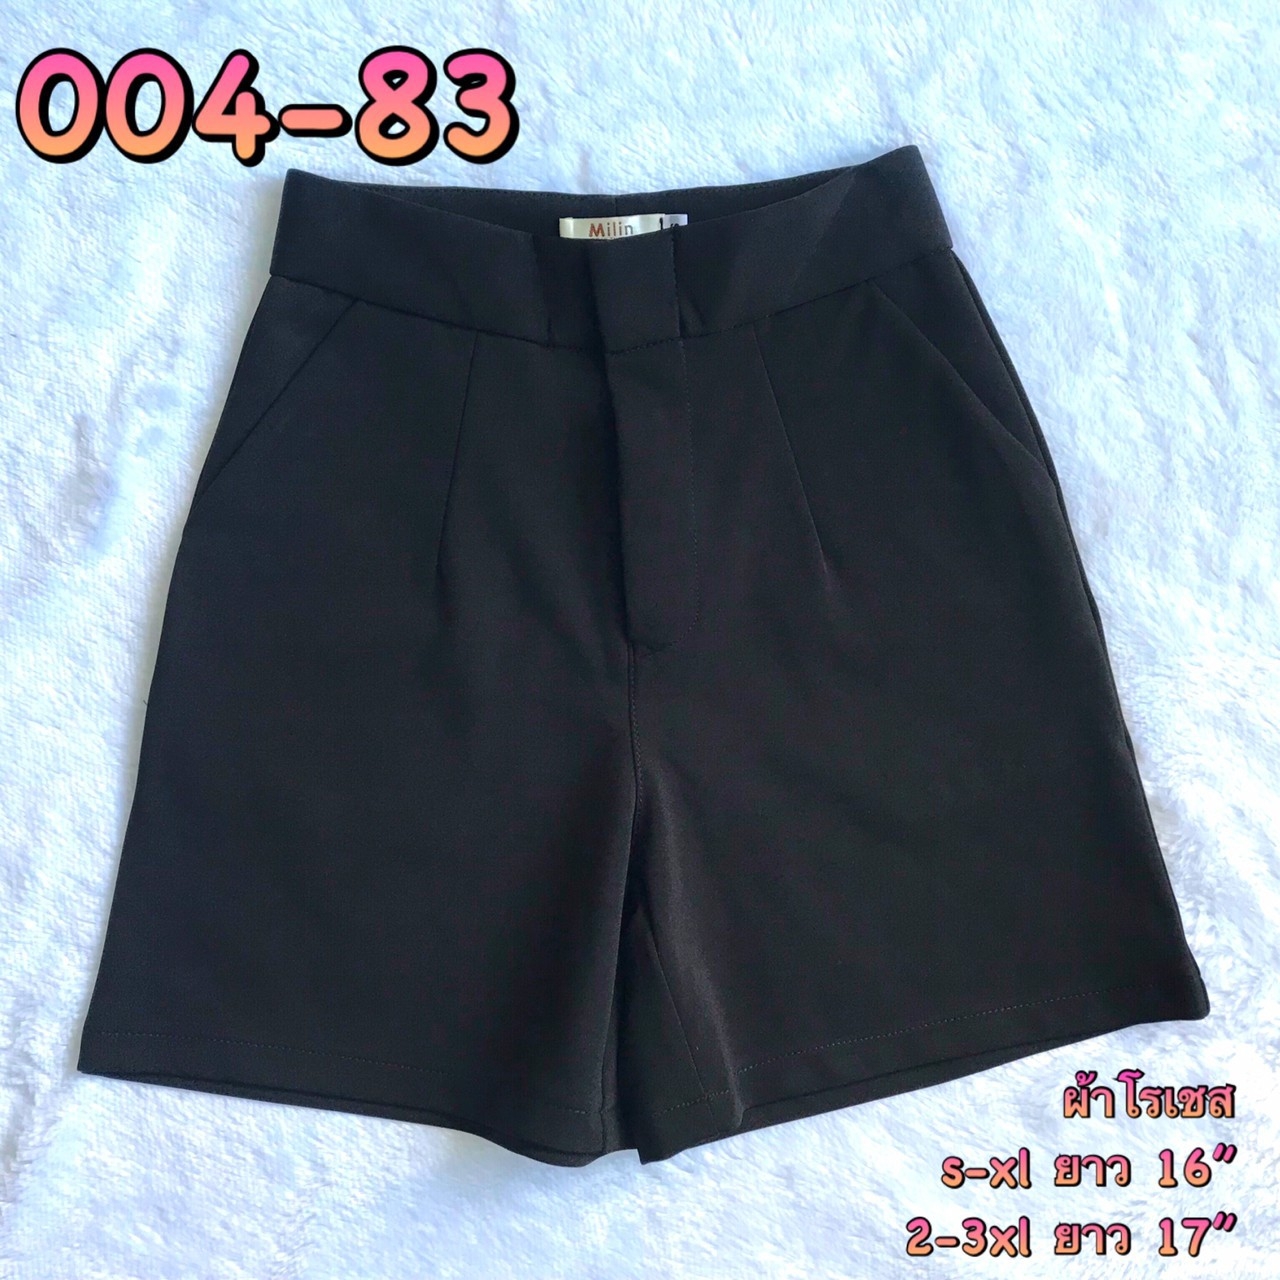 OHOskirt กางเกงขาสั้น กางเกงซิปหน้า กางเกงผ้าโรเชฟ 004-82/004-83 / 004-84 /004-80 /004-87/004-88/004-85/004-81/004-86